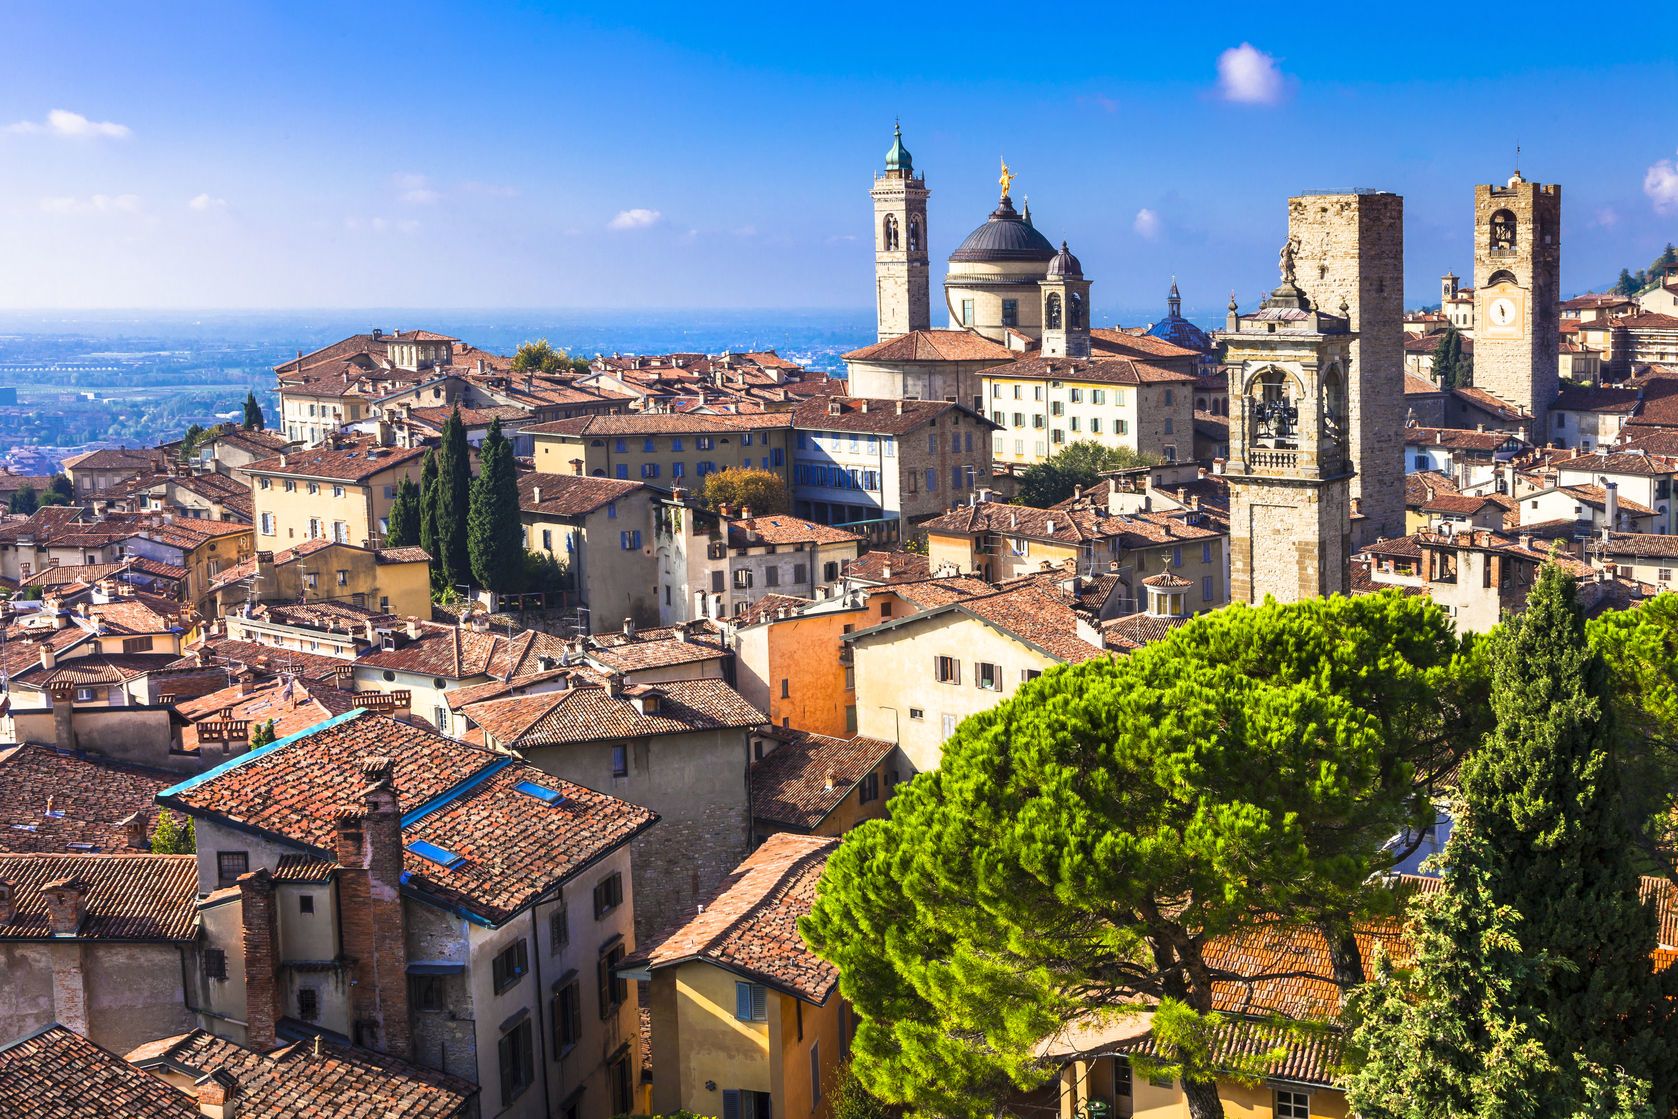 Pohled středověkého Bergamo v Itálii | freeartist/123RF.com